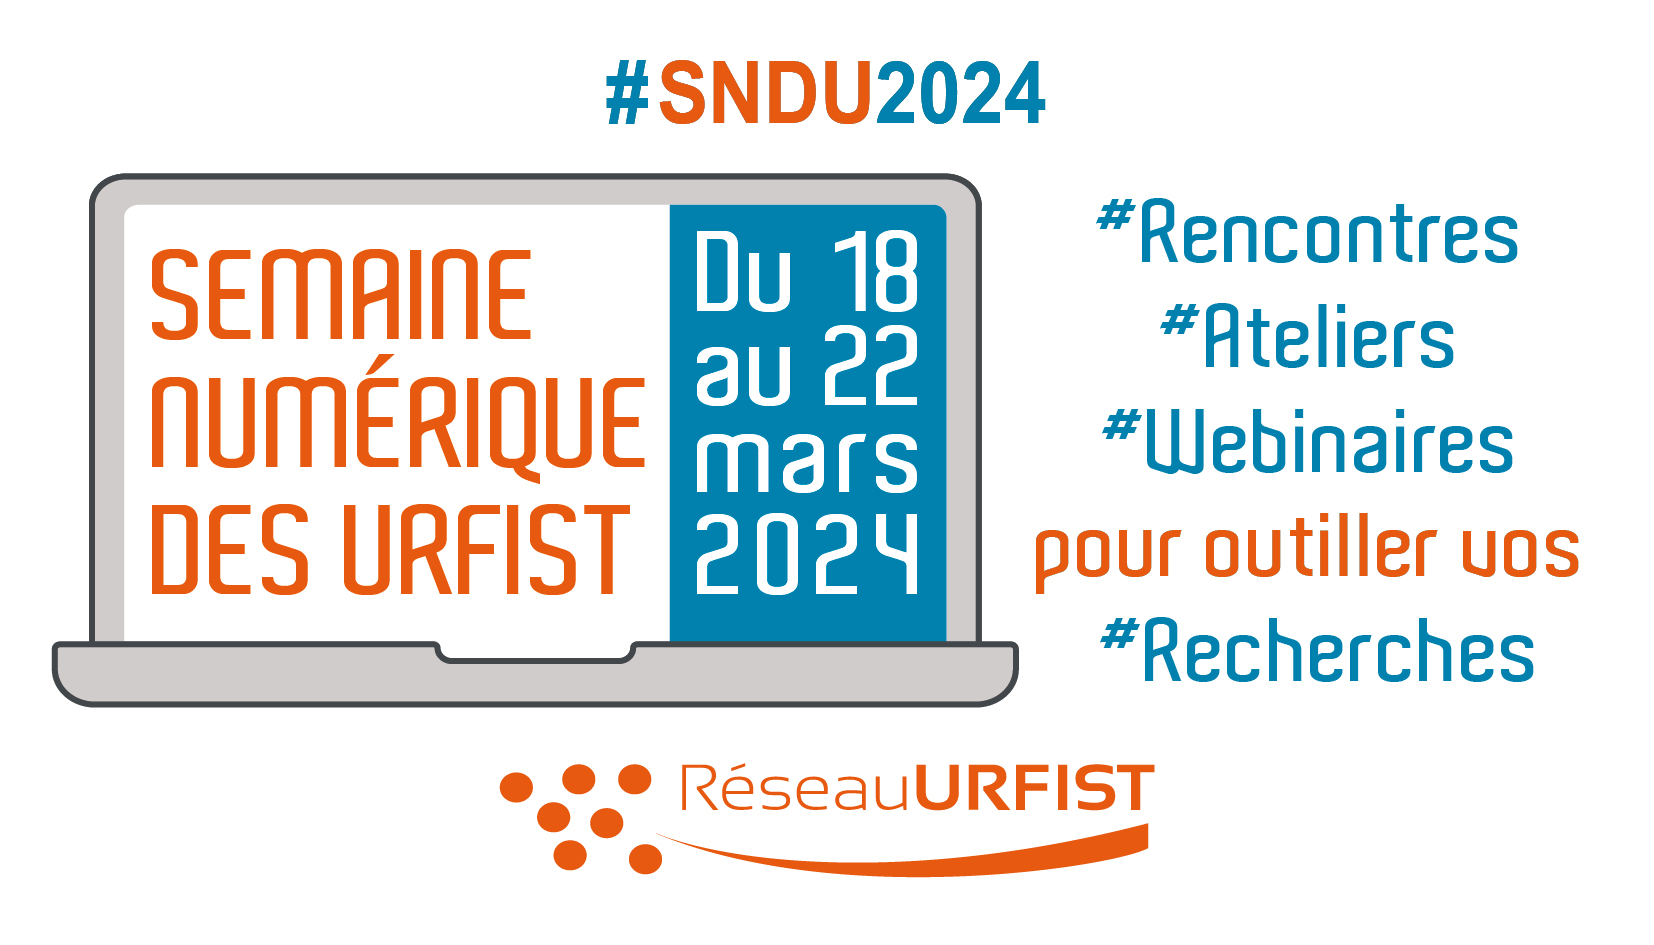 #SNDU2024. Semaine numérique des Urfist. Du 18 au 22 mars 2024. Une semaine de rencontres, ateliers et webinaires pour outiller vos recherches. + le logo du Réseau URFIST.